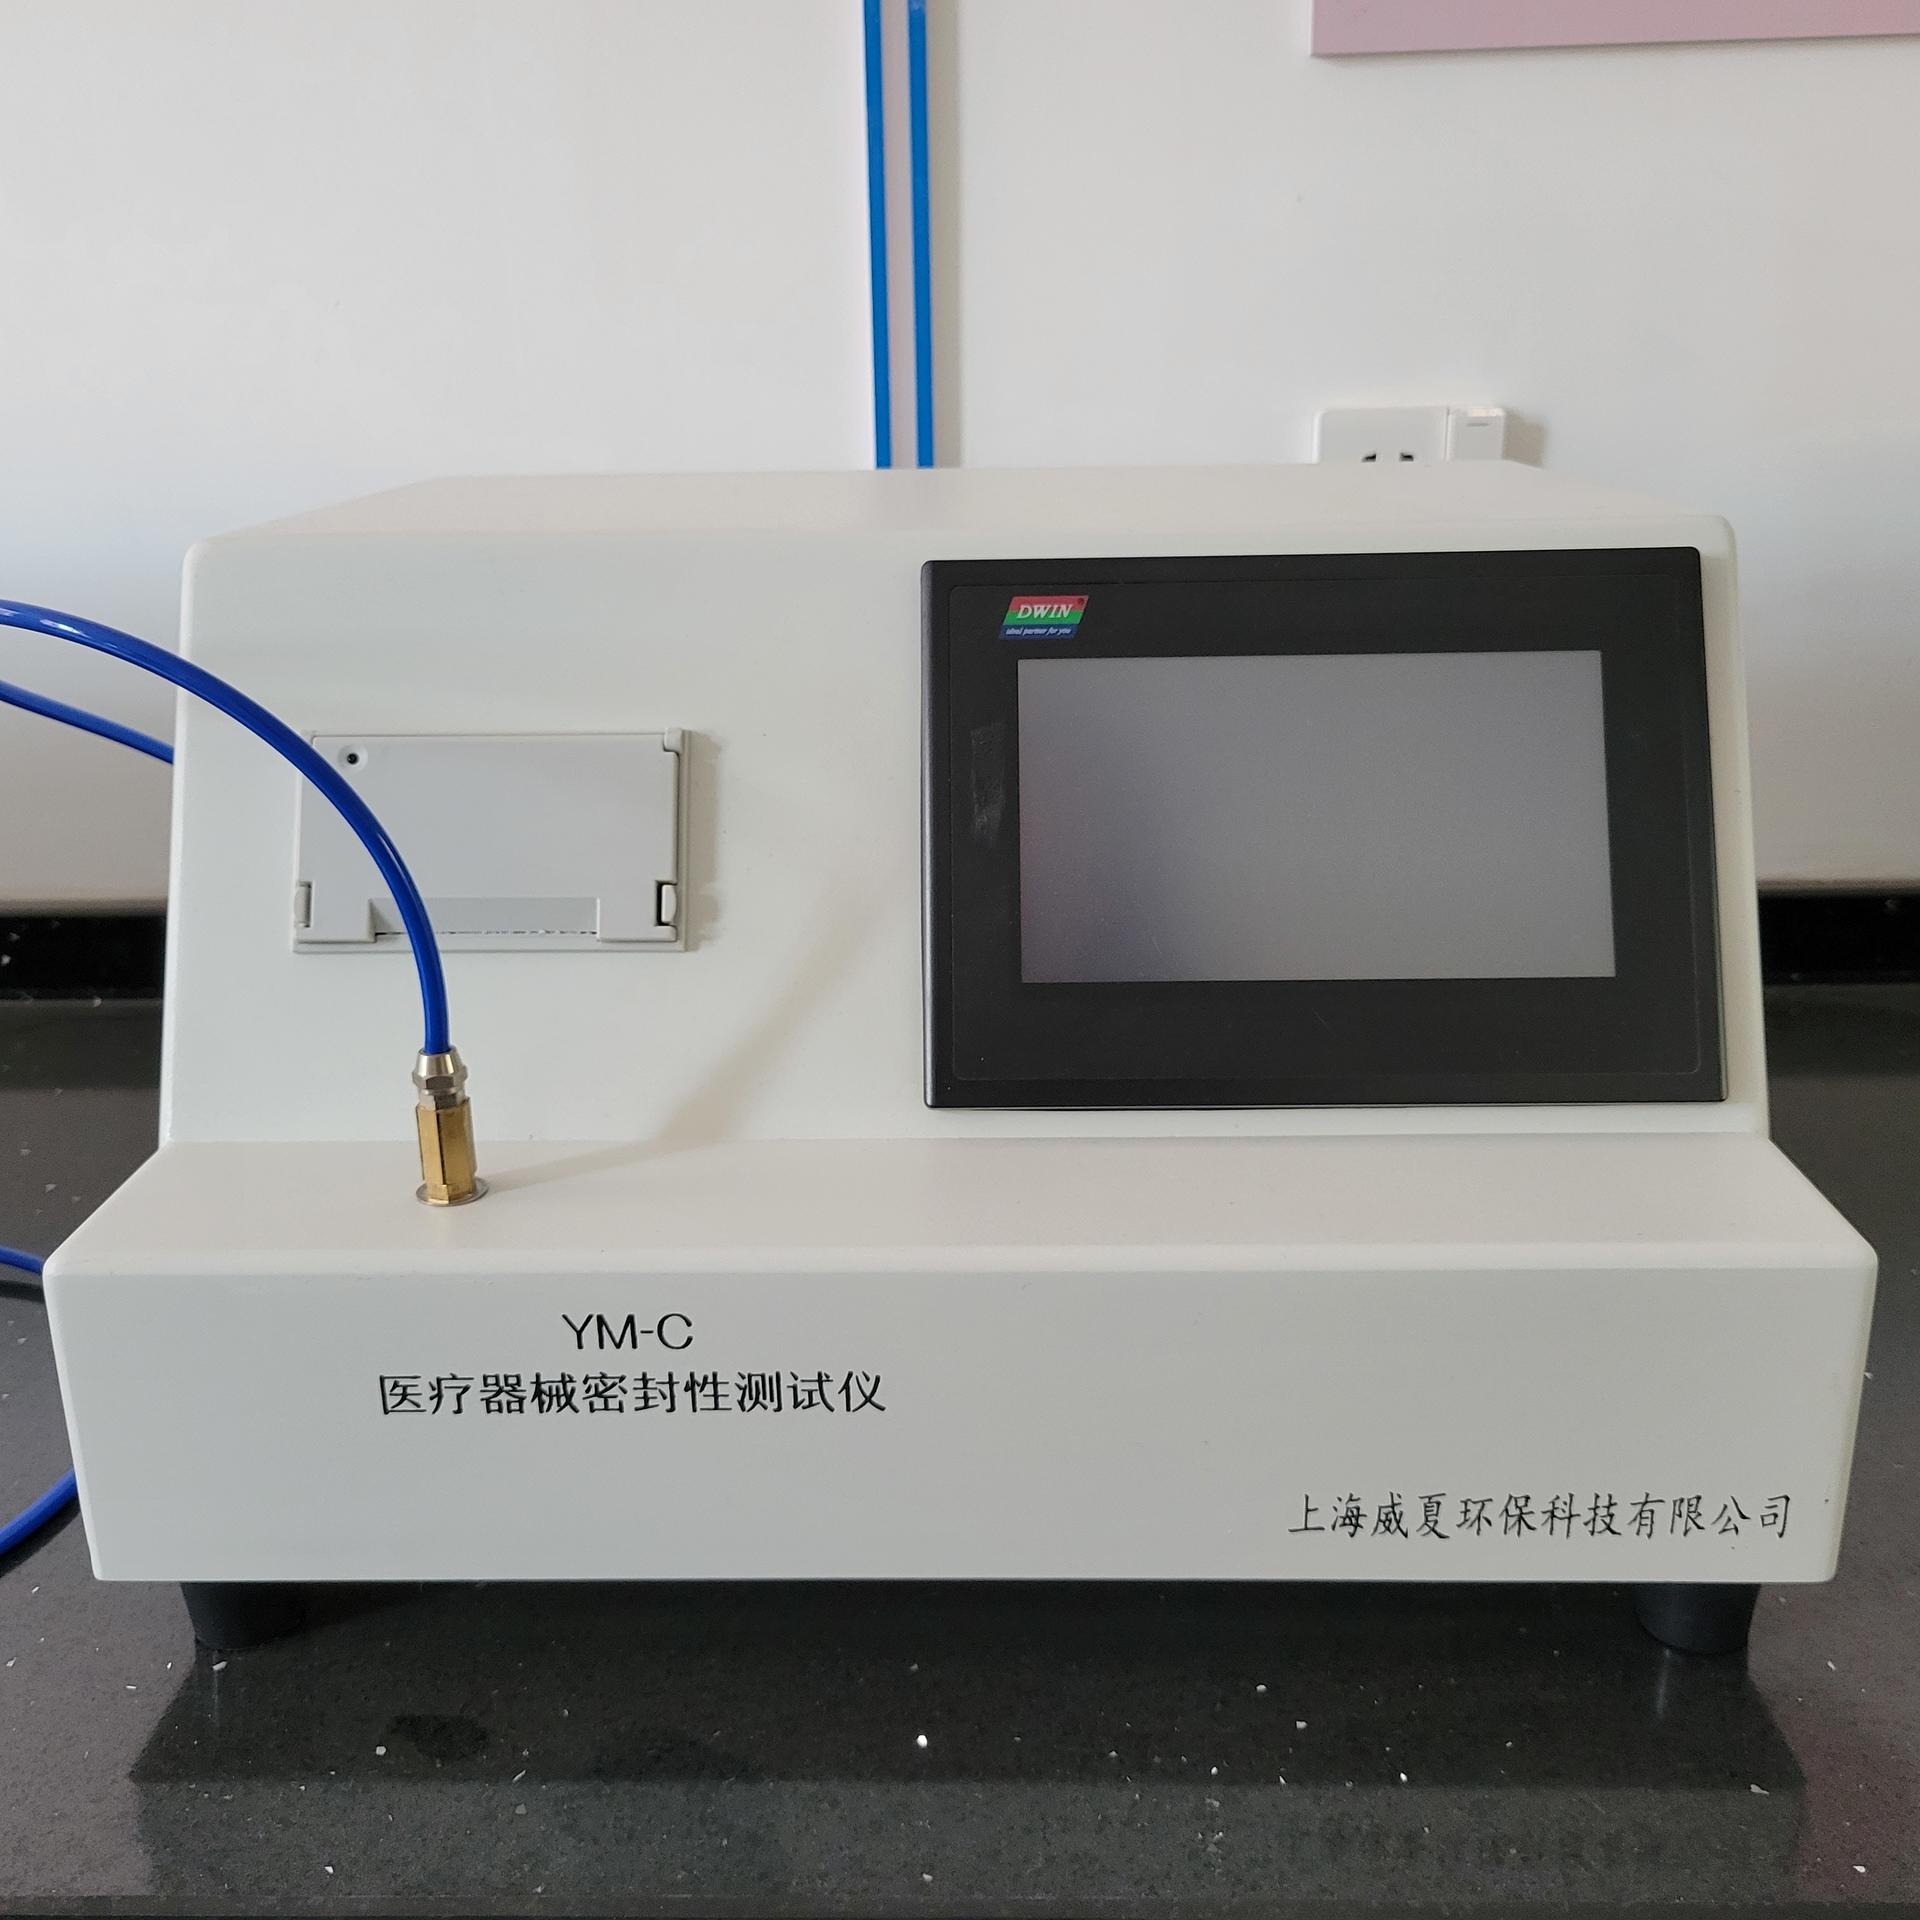 杭州 威夏 YM-C医用密封性测试仪  适用于输液器、输血器、输液针、mazui包过滤器、管路、导管、快速接头